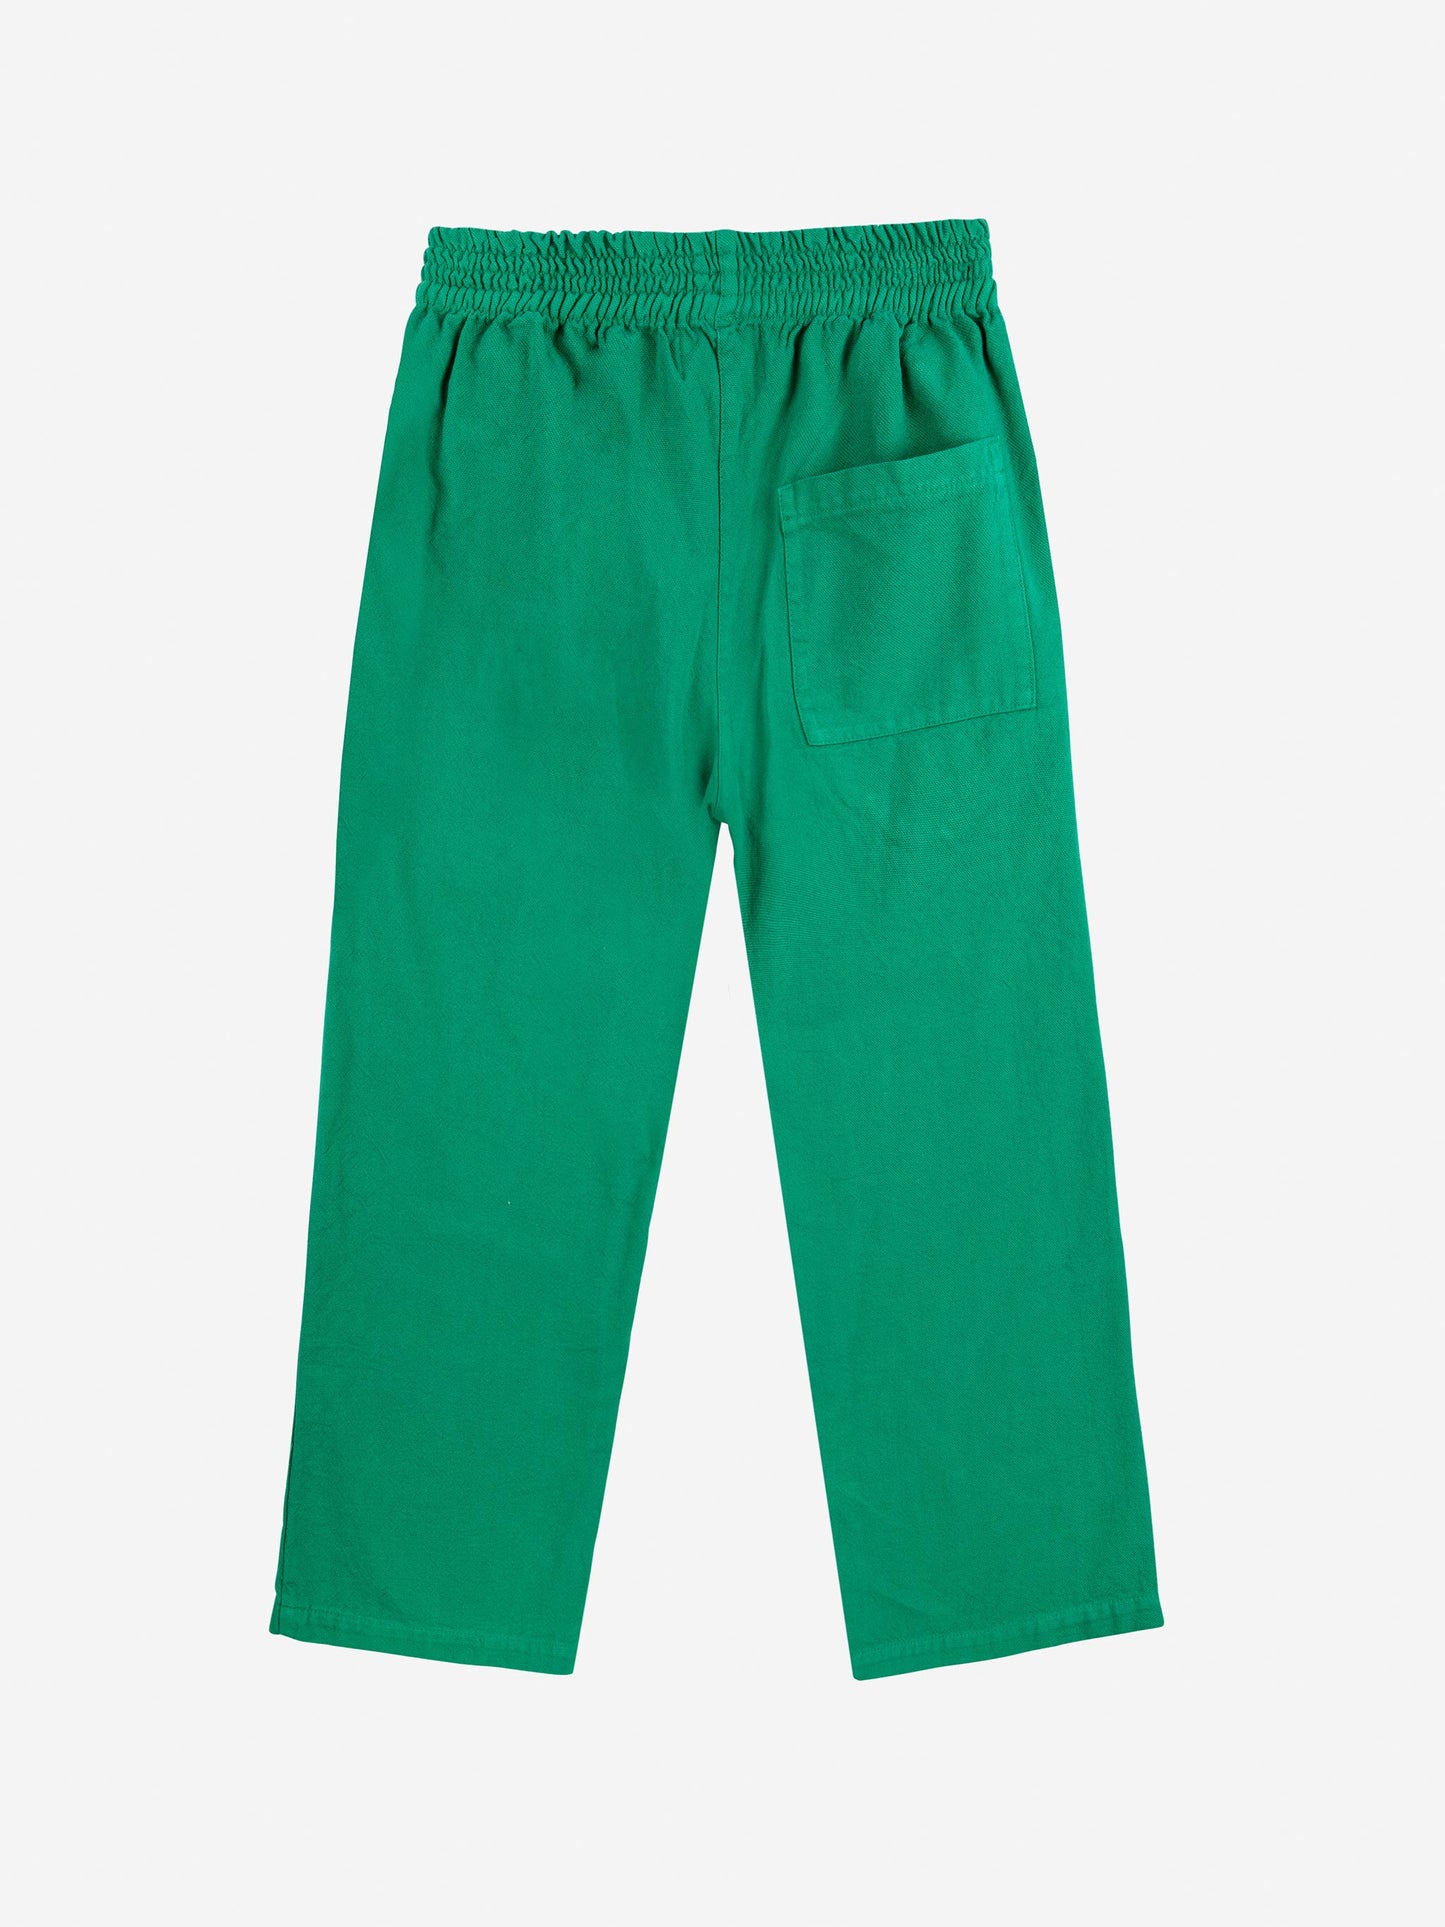 Pantalons Poma verds